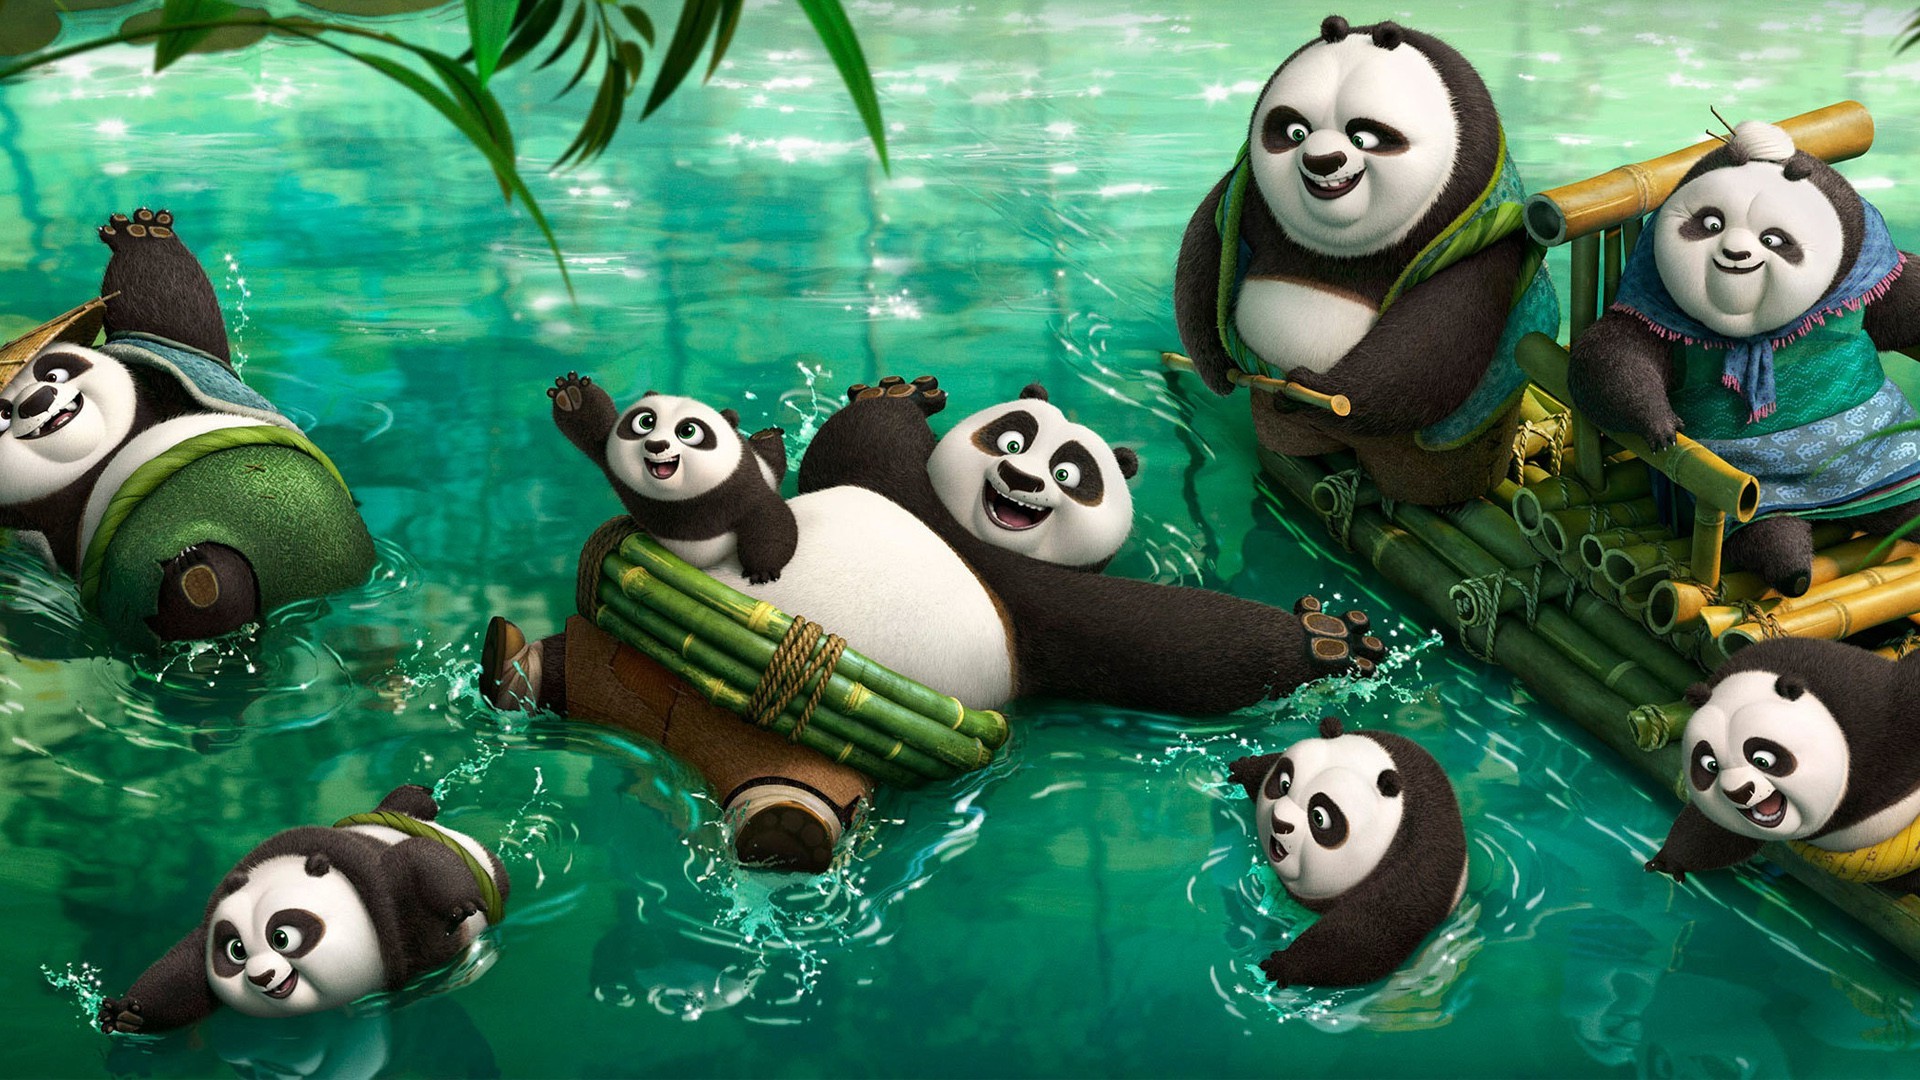 Обои иллюстрация панда Кунг-фу Панда на рабочий стол